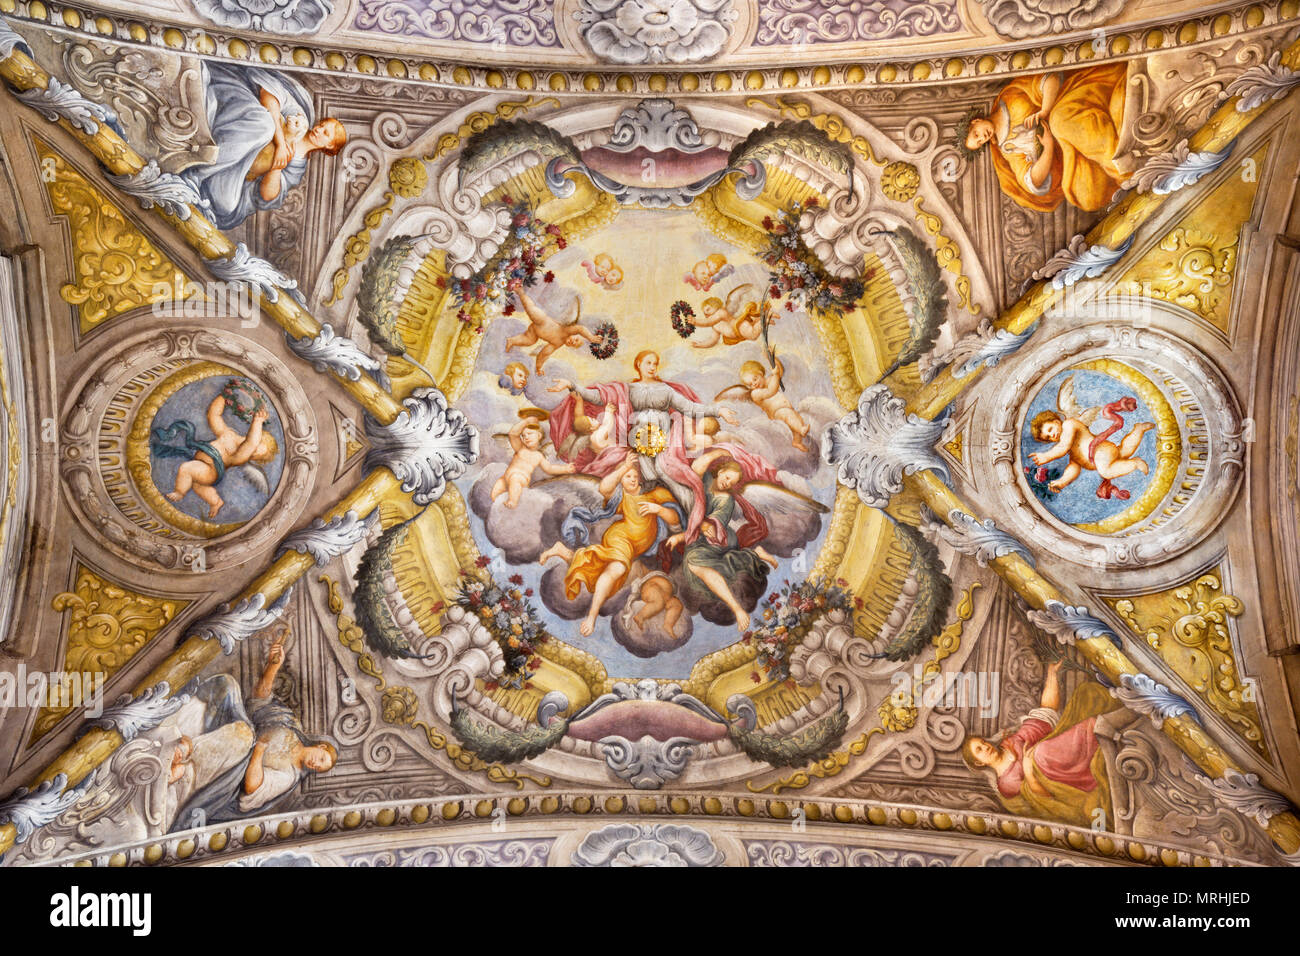 PARMA, Italia - 16 Aprile 2018: il soffitto affrescato con l'Apoteosi di Santa Lucia nella Chiesa di Santa Lucia da Alessandro Baratta (1637-1714). Foto Stock